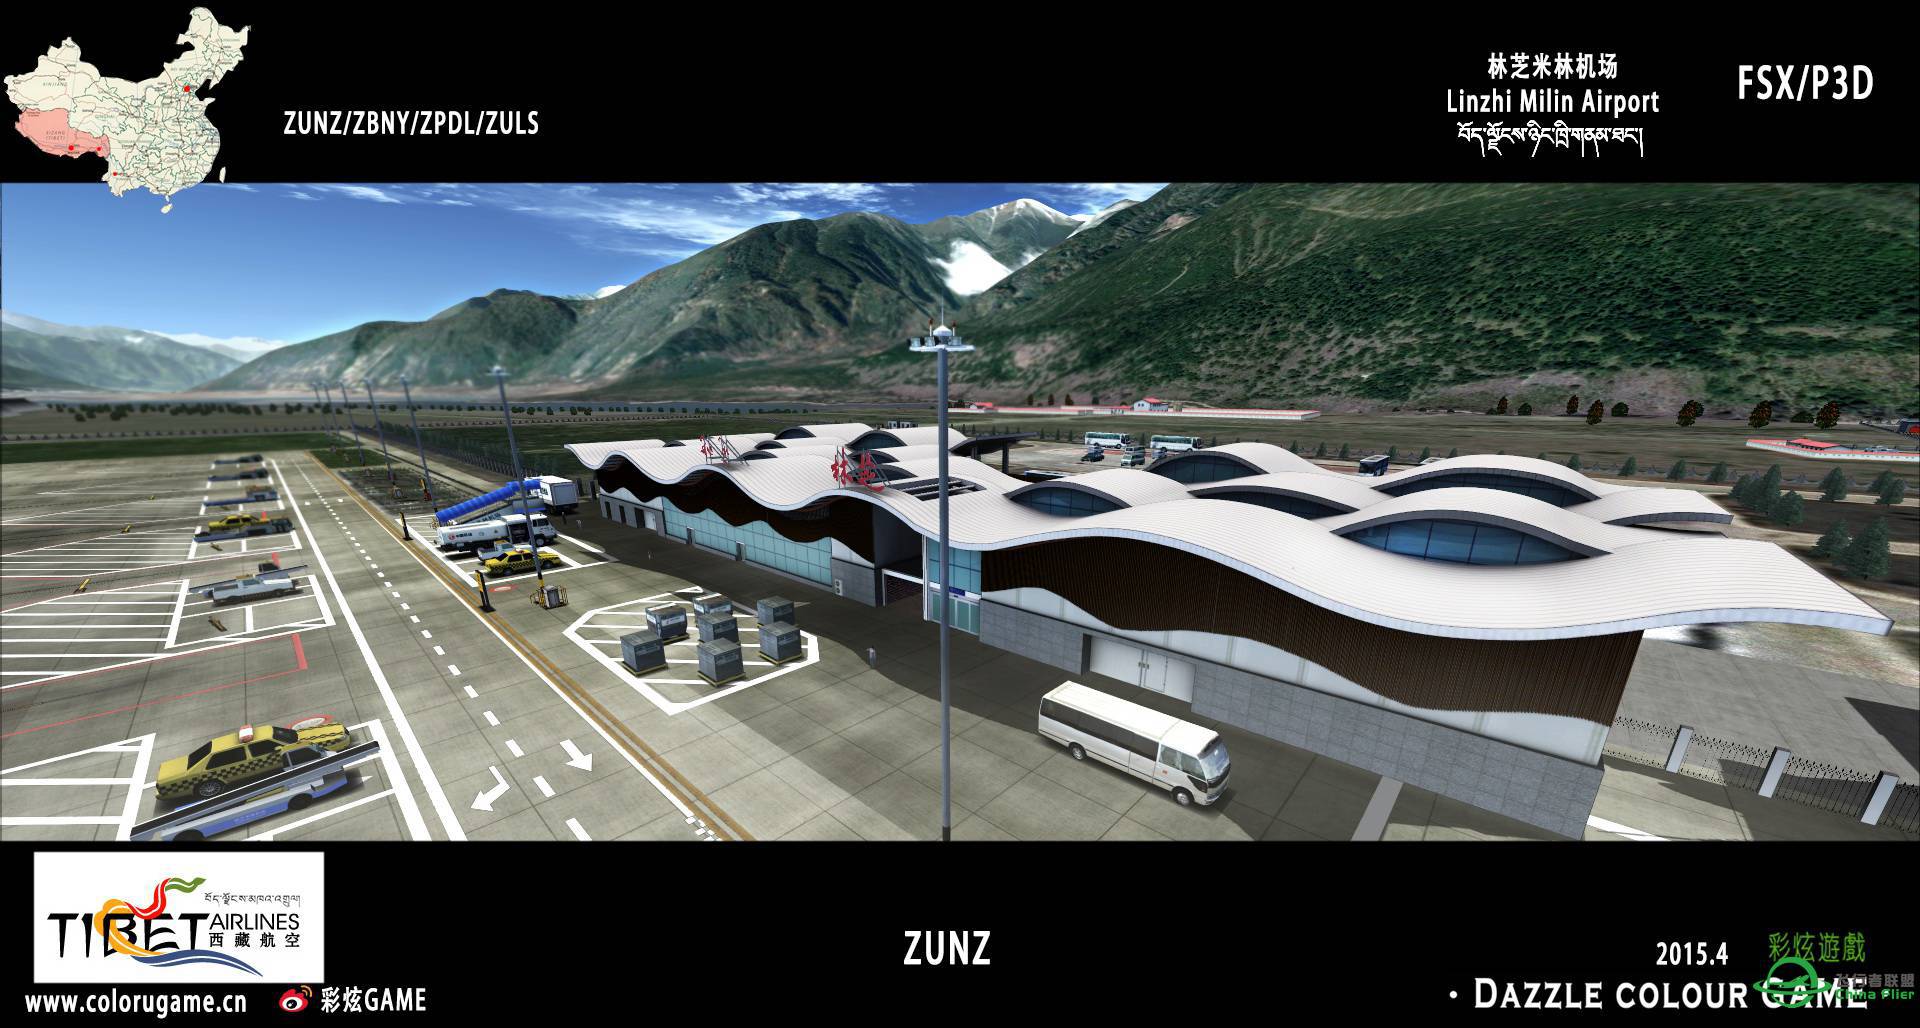 彩炫地景：林芝米林机场（ZUNZ）正式发布！-3292 